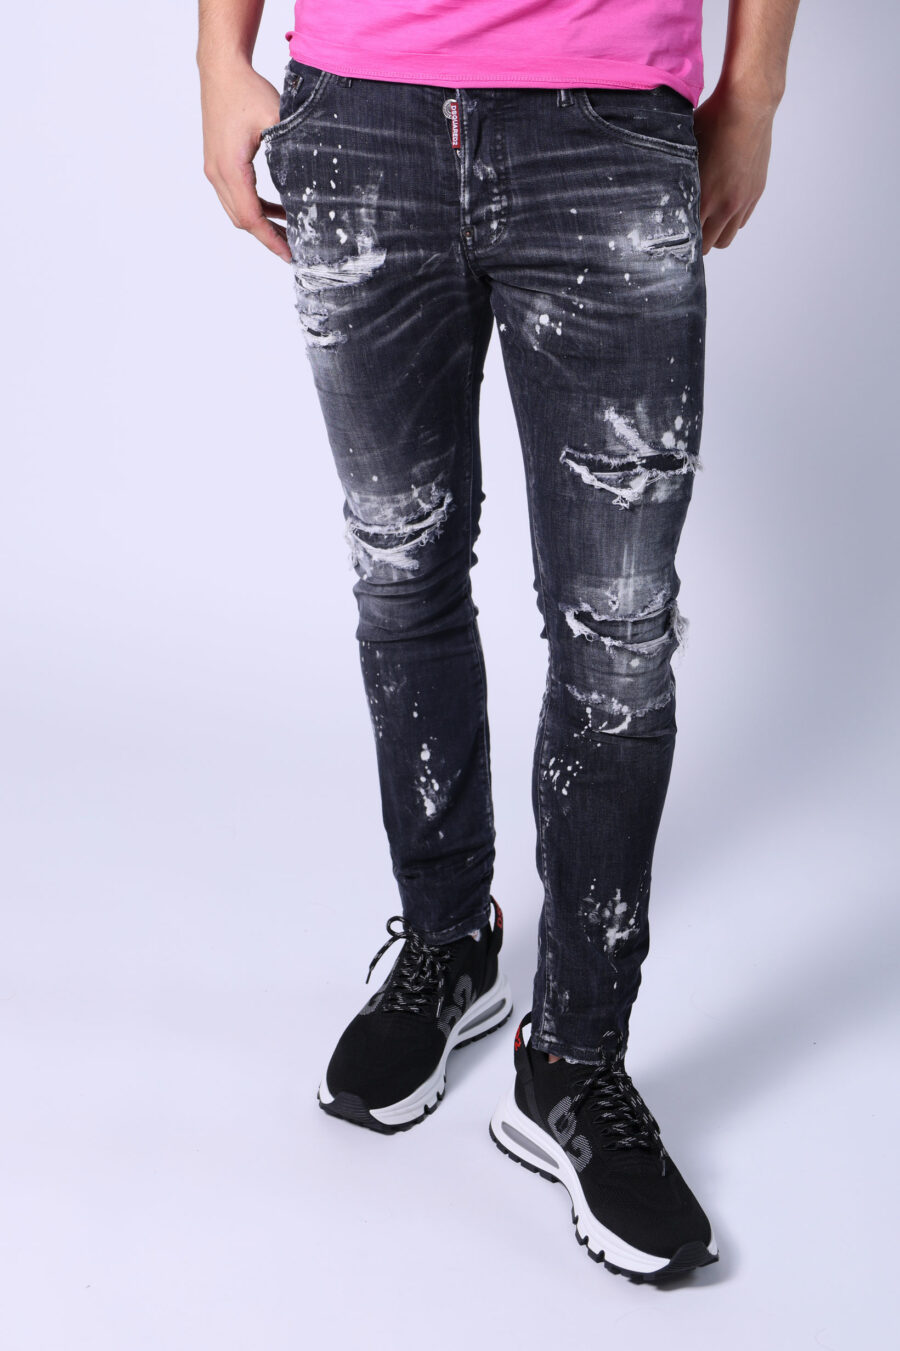 Skater-Jeans-Hose schwarz abgenutzt mit Rissen - Untitled Catalog 05546